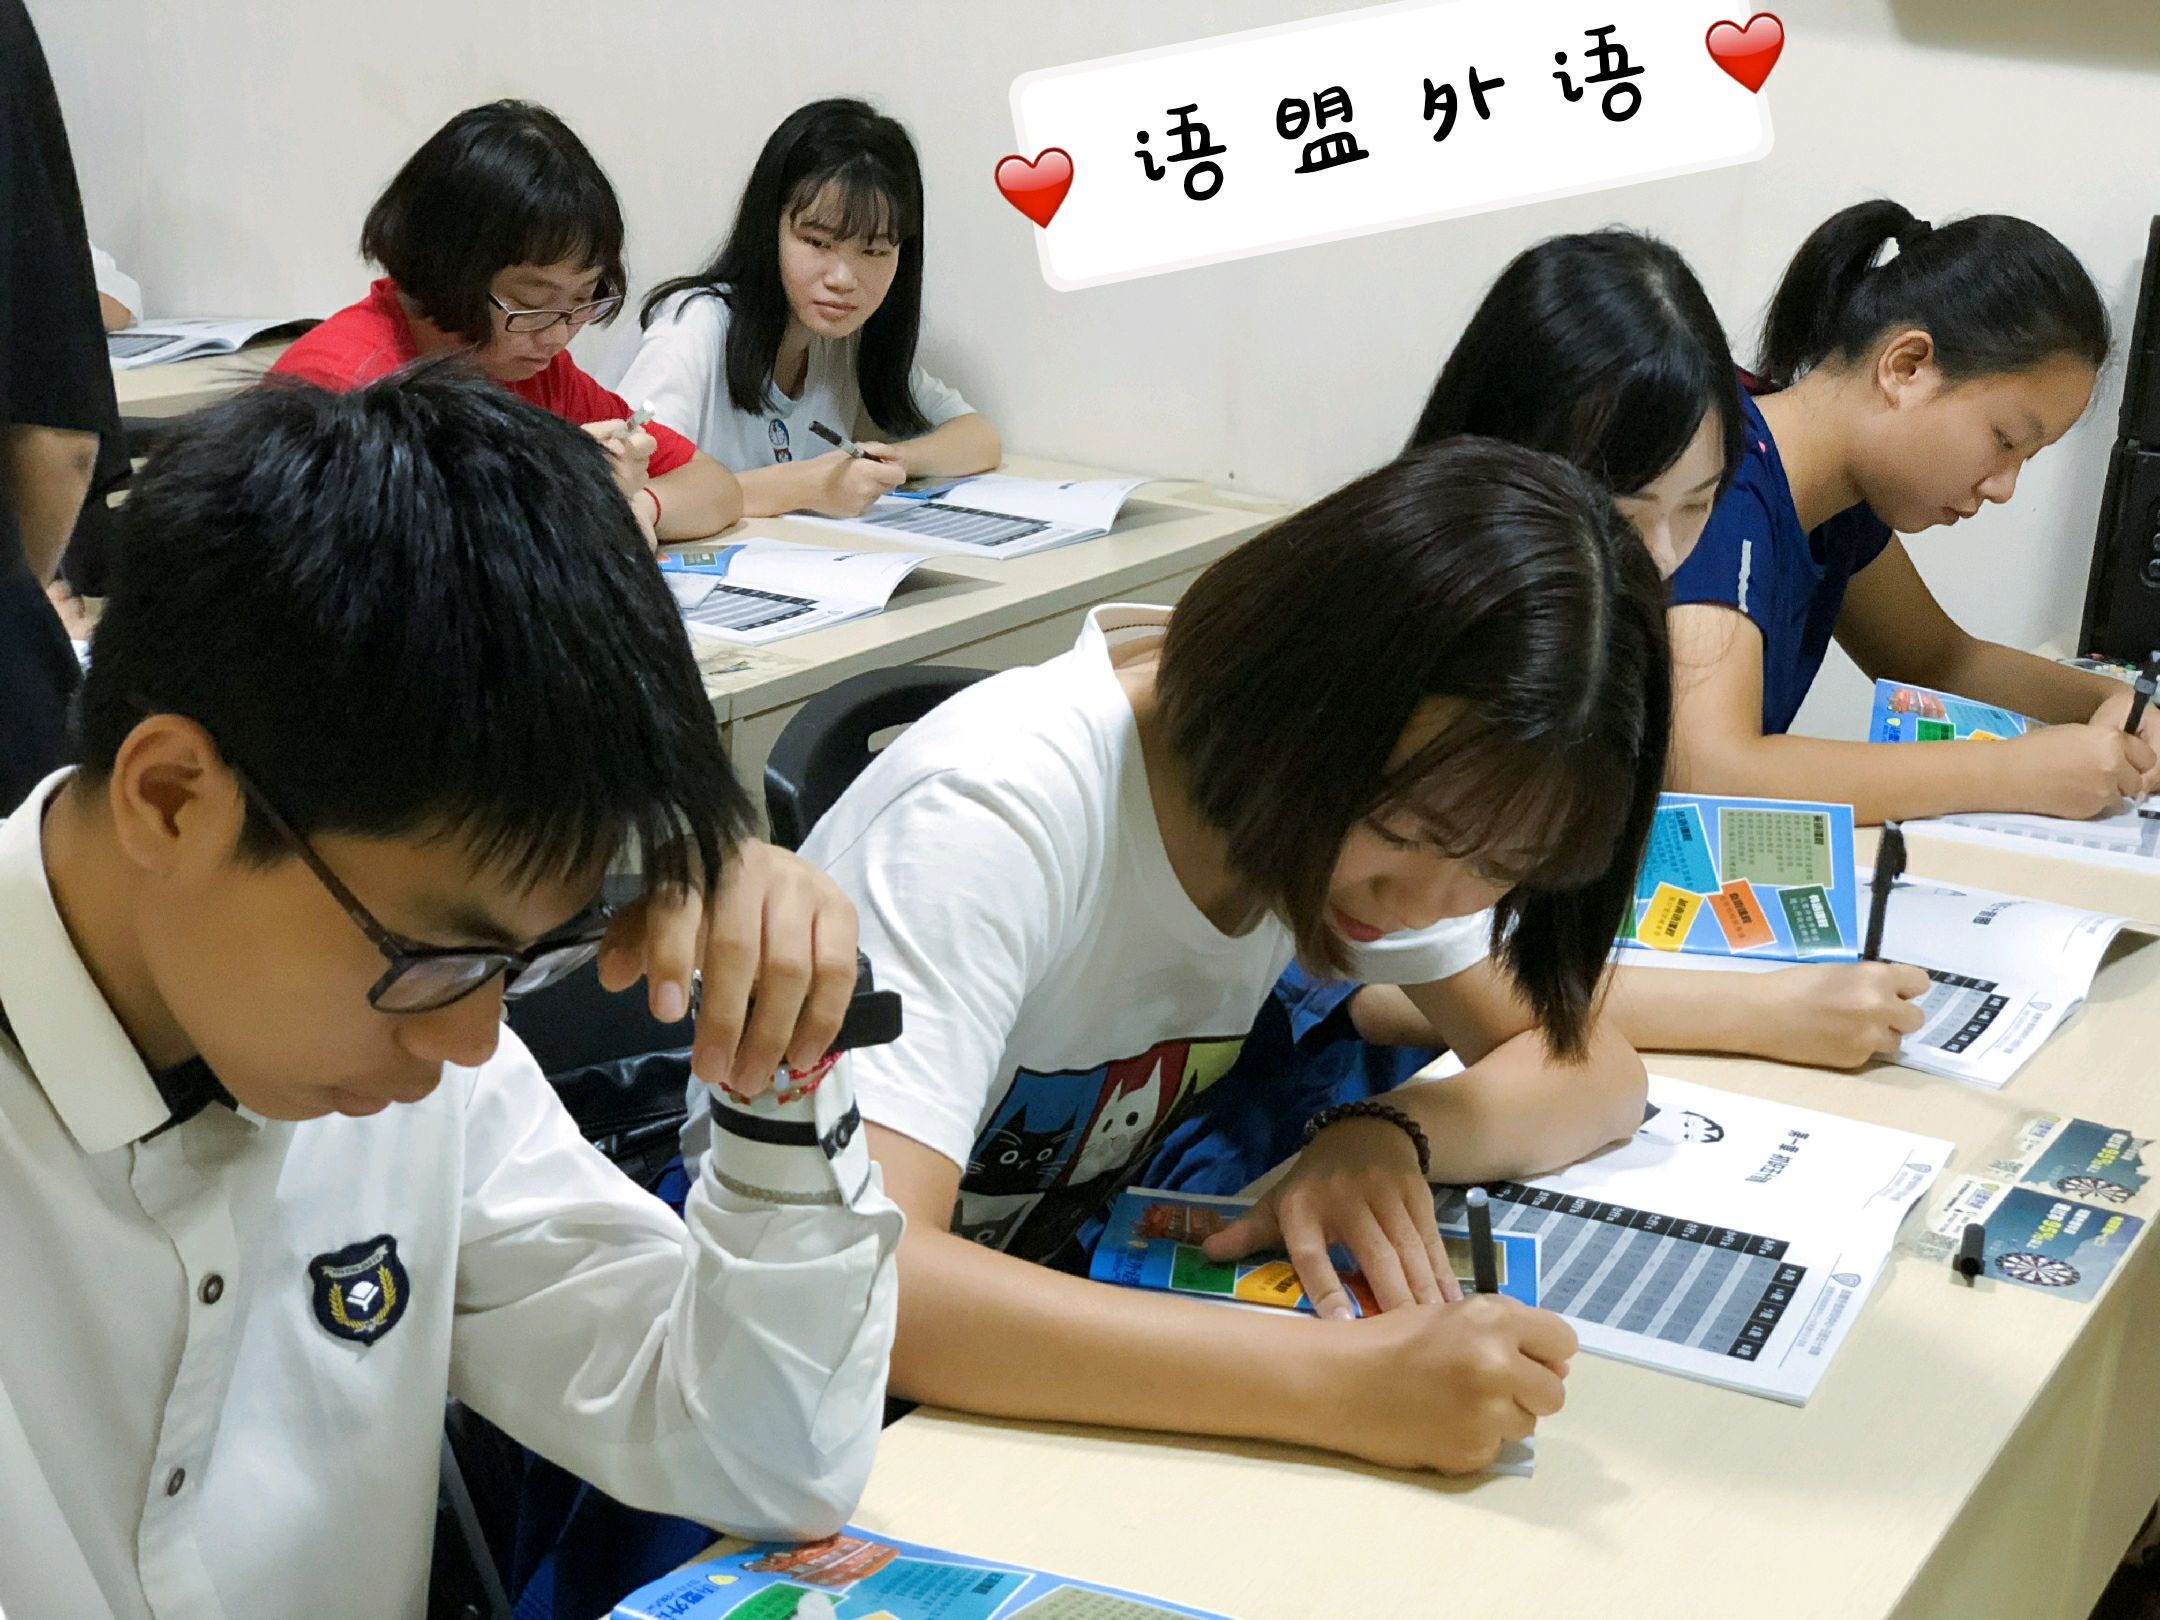 南宁日语暑假兴趣班,利用零碎时间轻松学日语